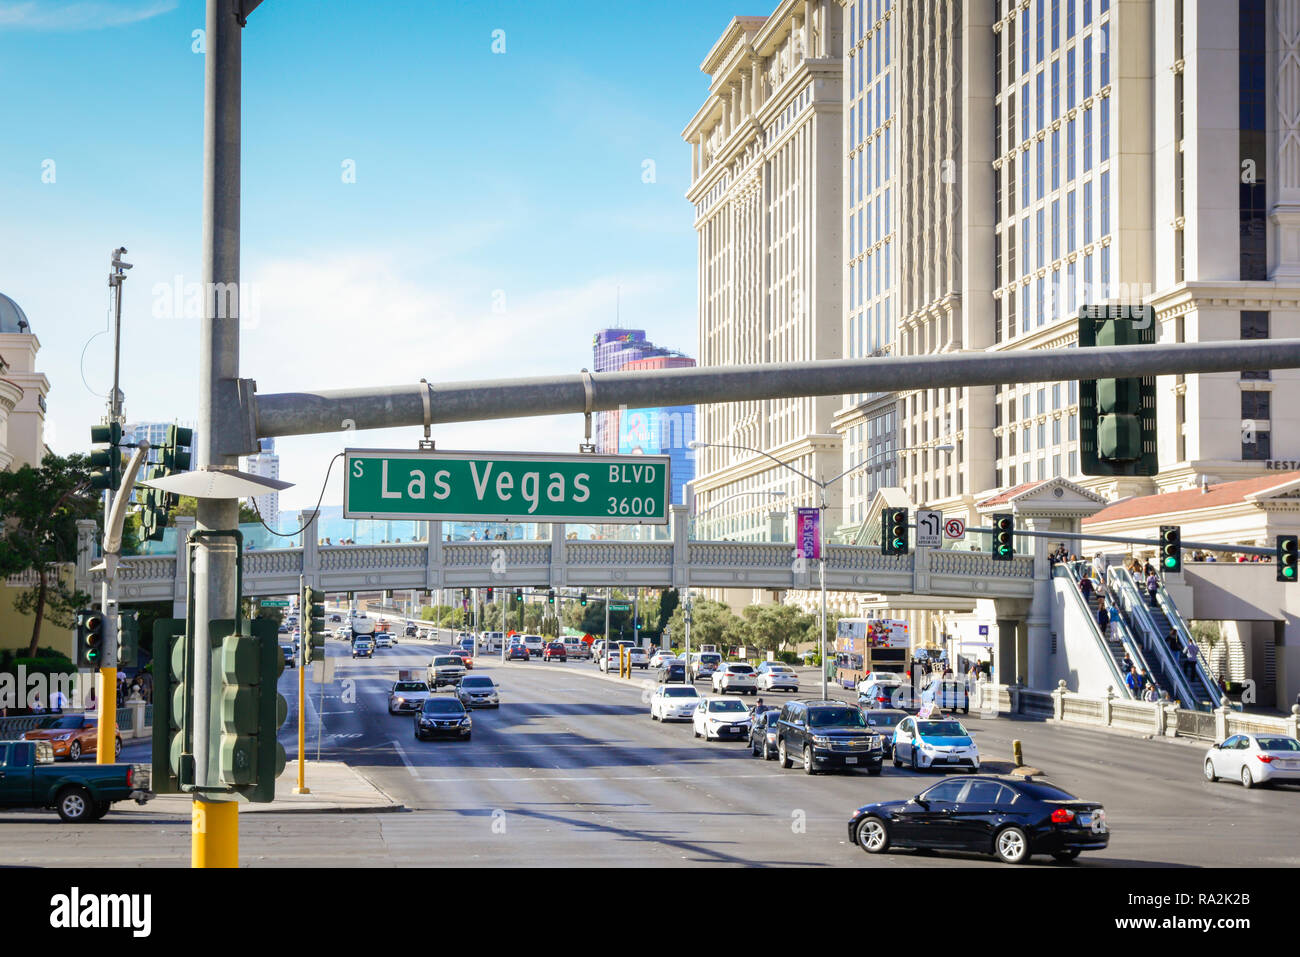 Señal de calle Las Vegas Blvd, conocida como Las Vegas Strip, en Las Vegas, NV con hoteles y casinos que recubren la tira junto con puentes peatonales Foto de stock